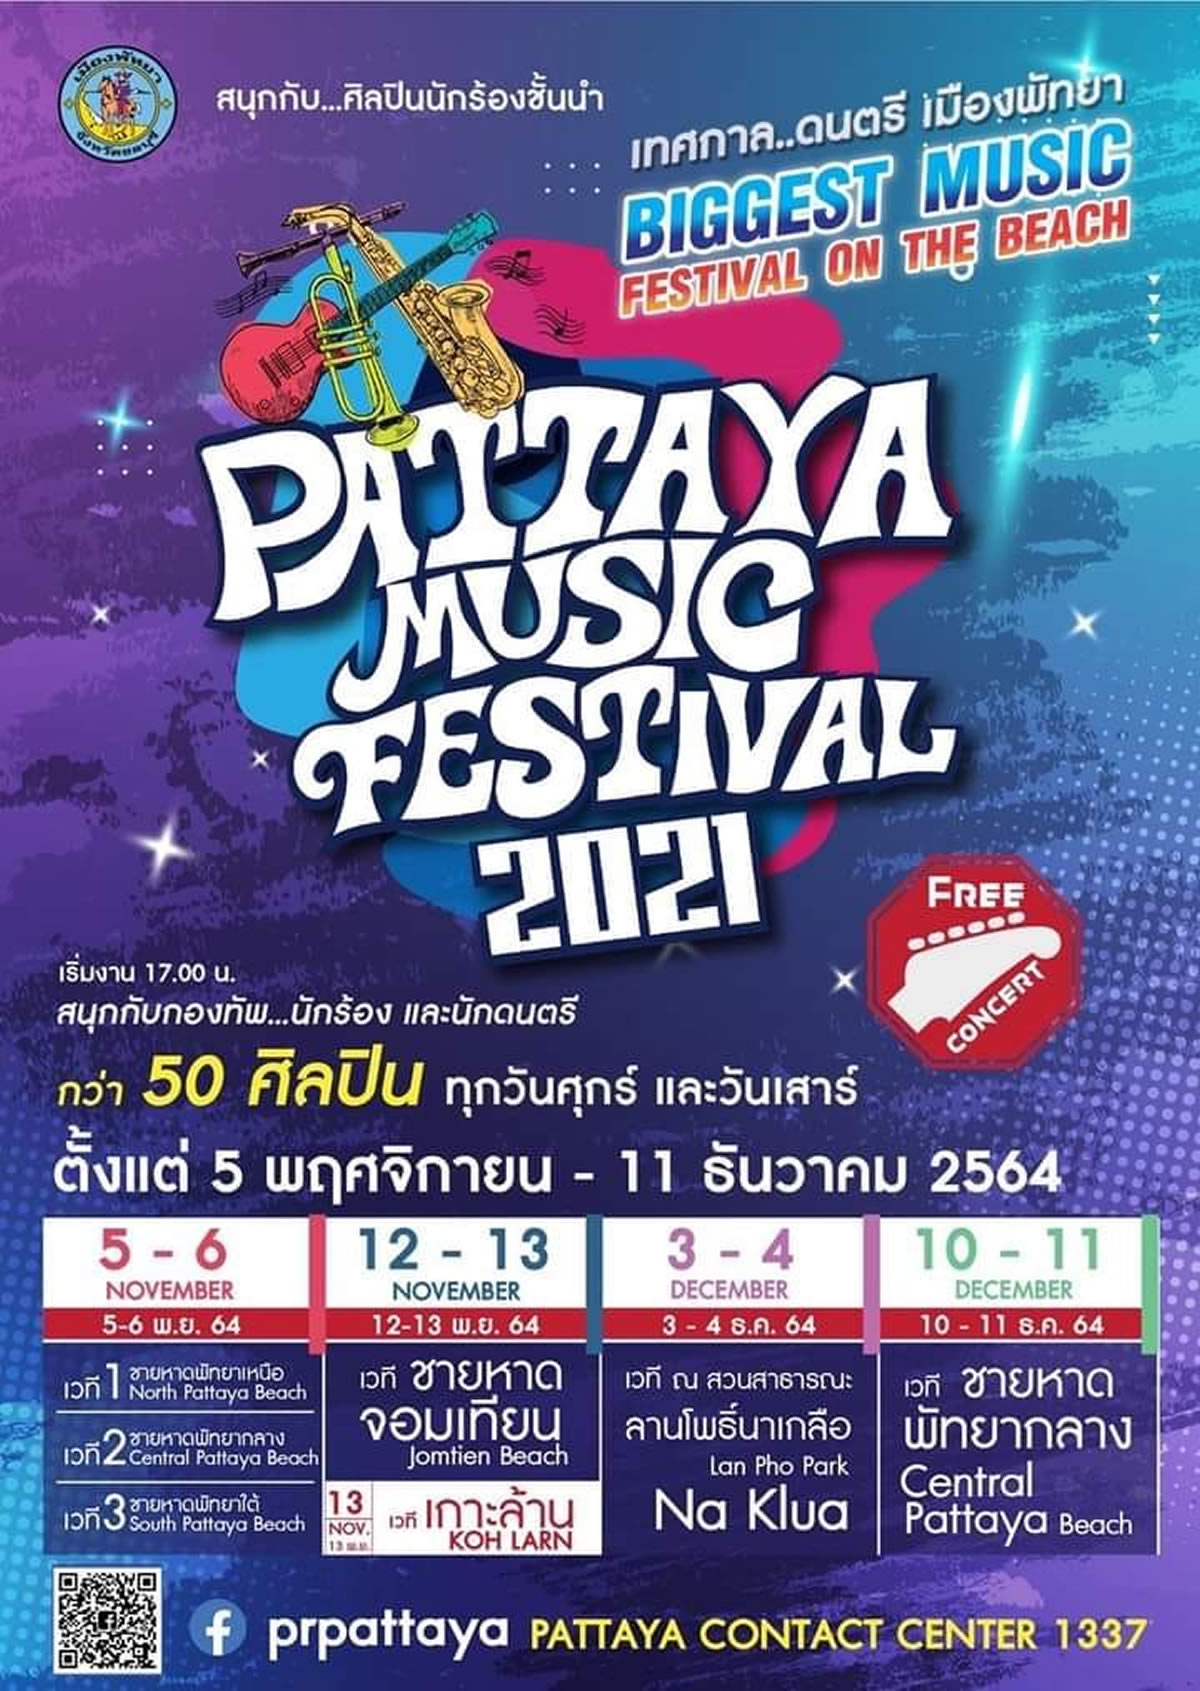 「パタヤミュージックフェスティバル2021」は11月5日から12月11日までの金土に開催